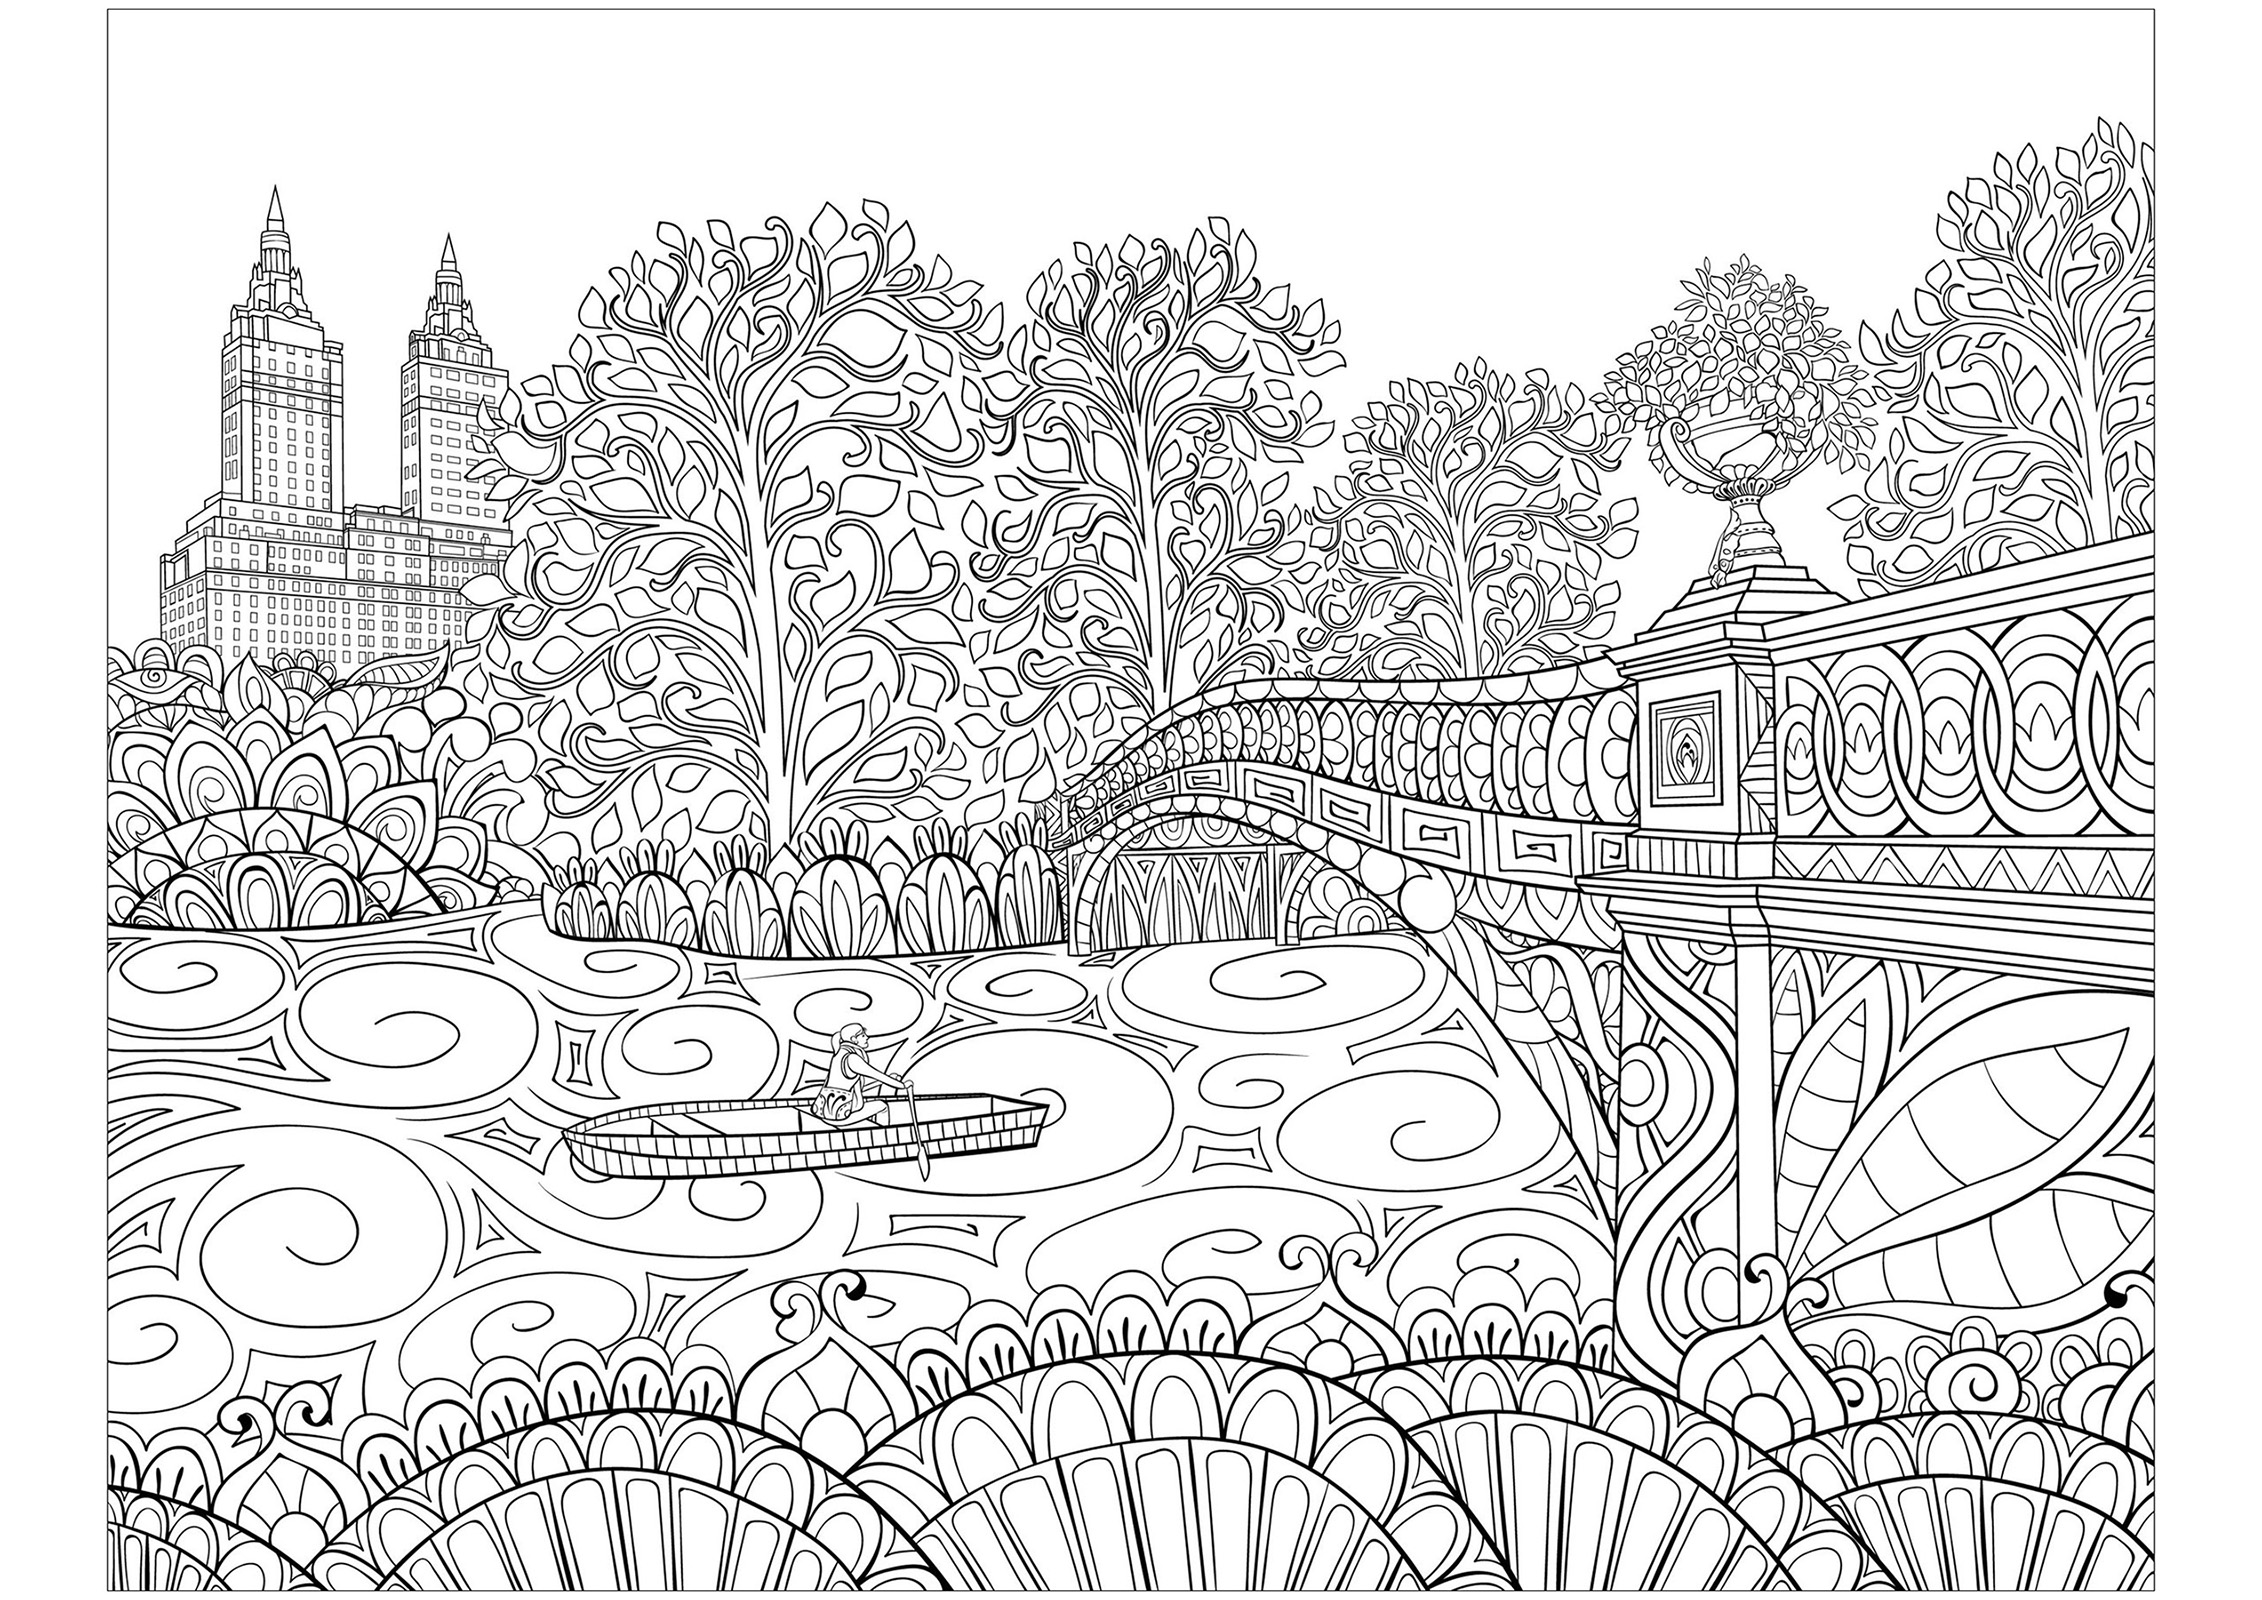 El famoso puente Bow de Central Park (Nueva York), y varios elementos para colorear. El puente Bow es uno de los elementos más emblemáticos y fotografiados de Central Park. Construido en 1862, este puente de la época victoriana atraviesa el lago de Central Park y conecta Cherry Hill y Ramble, Artista : Nonuzza   Origen : 123rf